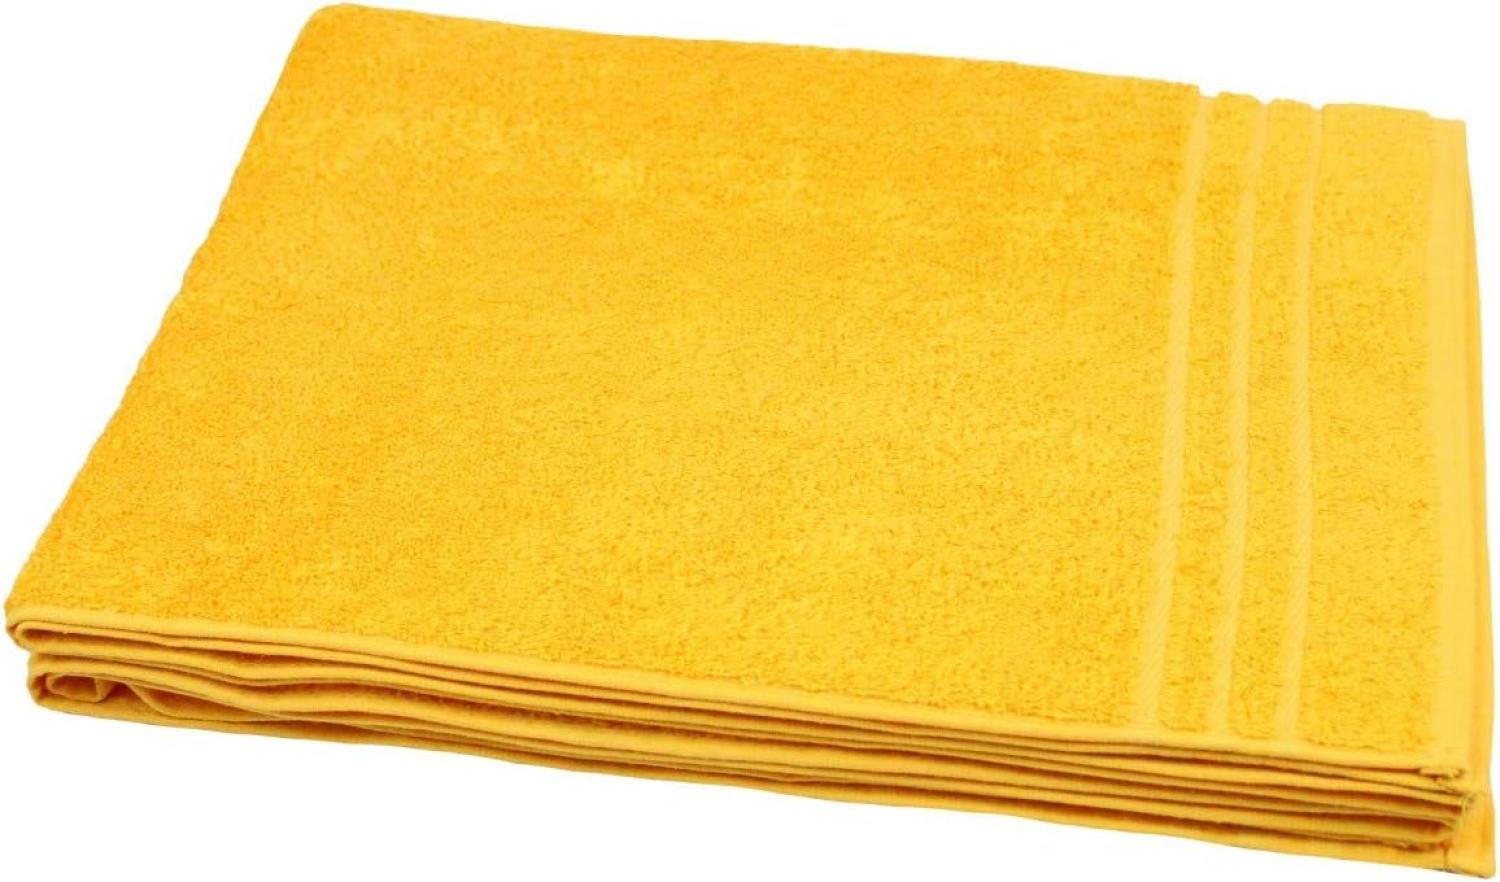 Saunatuch 70x170 cm gelb/orange mit Streifenborten »Sensepura« Bild 1